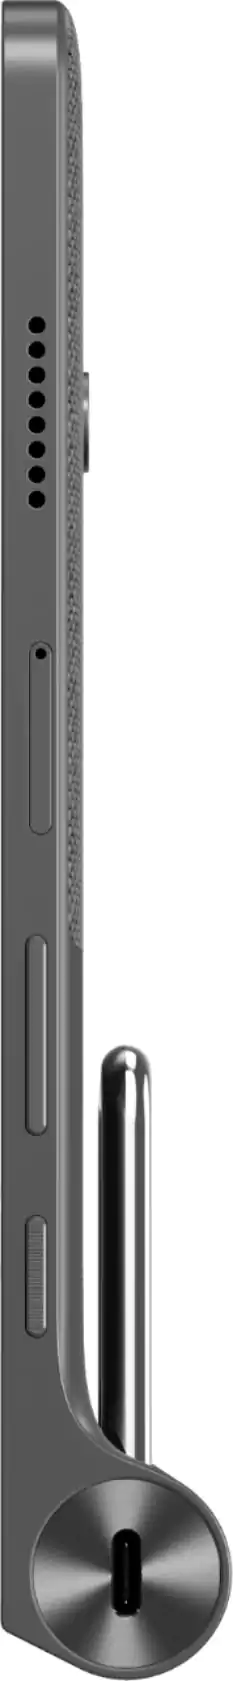 تابلت لينوفو يوجا تاب 11، شاشة 11 بوصة، ذاكرة داخلية 128 جيجابايت، رامات 4 جيجابايت، شبكة الجيل الرابع، رمادي